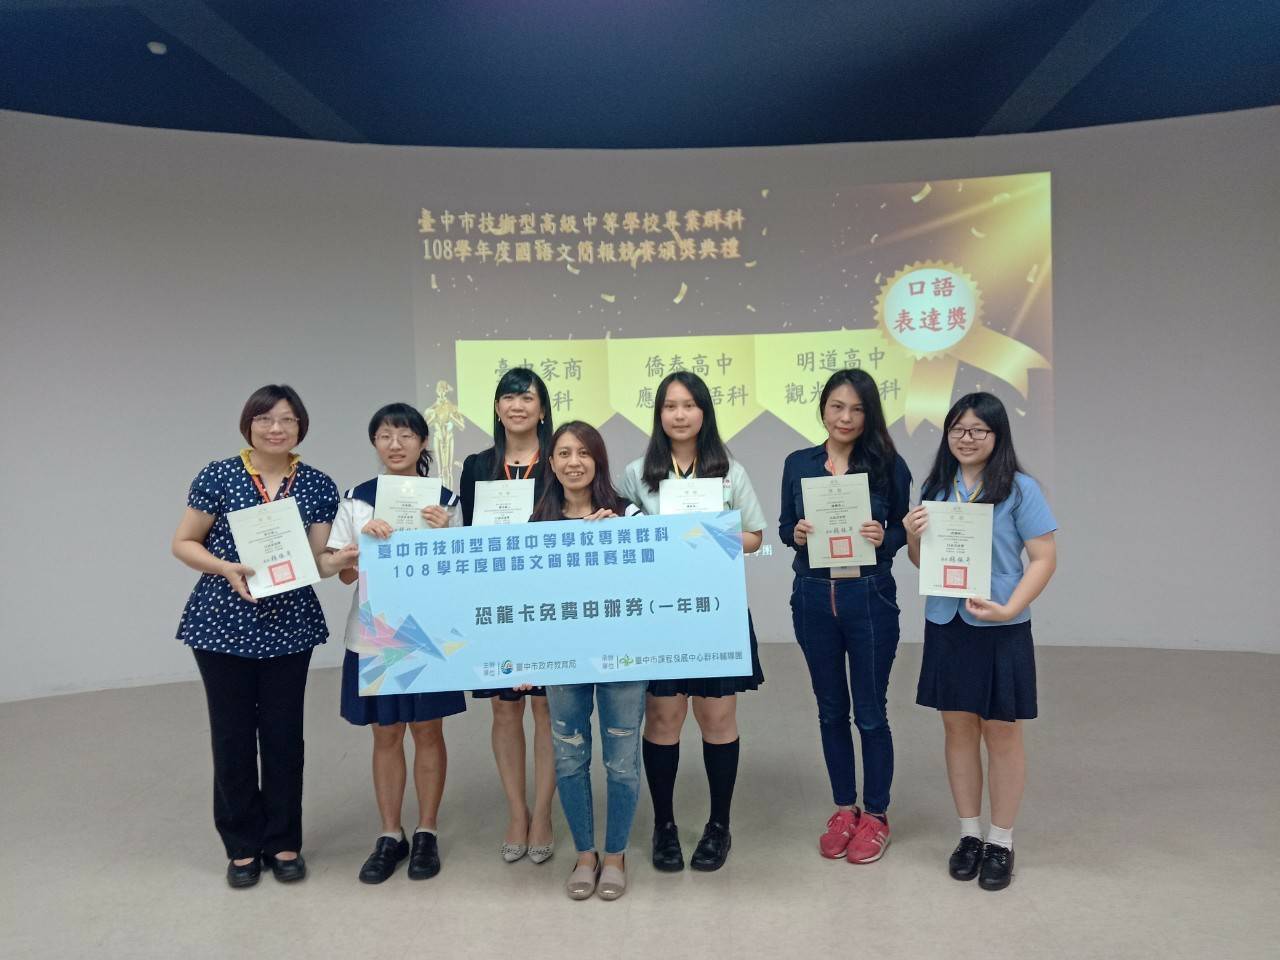 中市國語文簡報競賽高人氣 3週獲11萬瀏覽人次。(記者陳信宏翻攝)